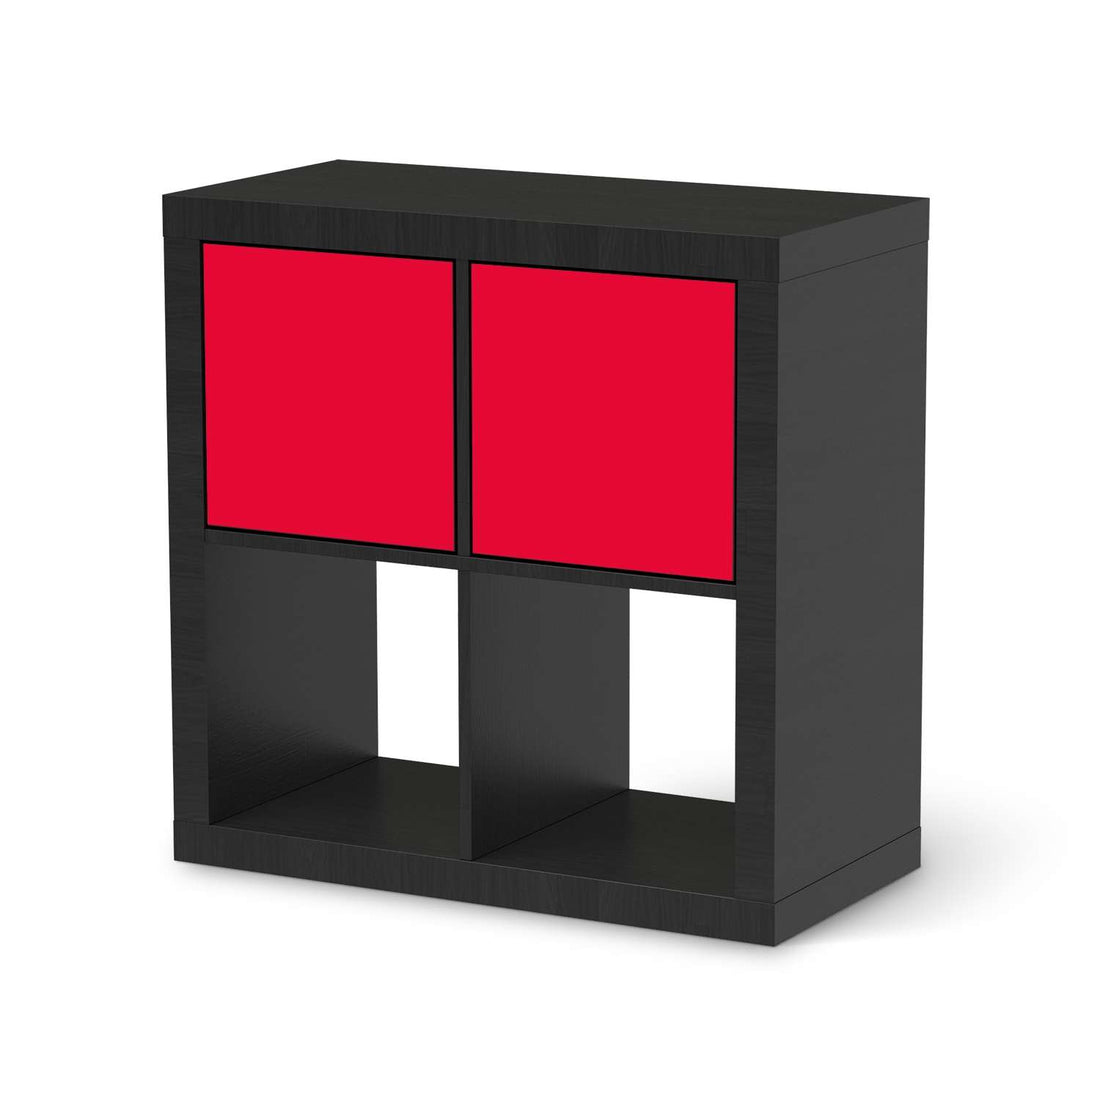 Möbelfolie Rot Light - IKEA Kallax Regal 2 Türen Quer - schwarz